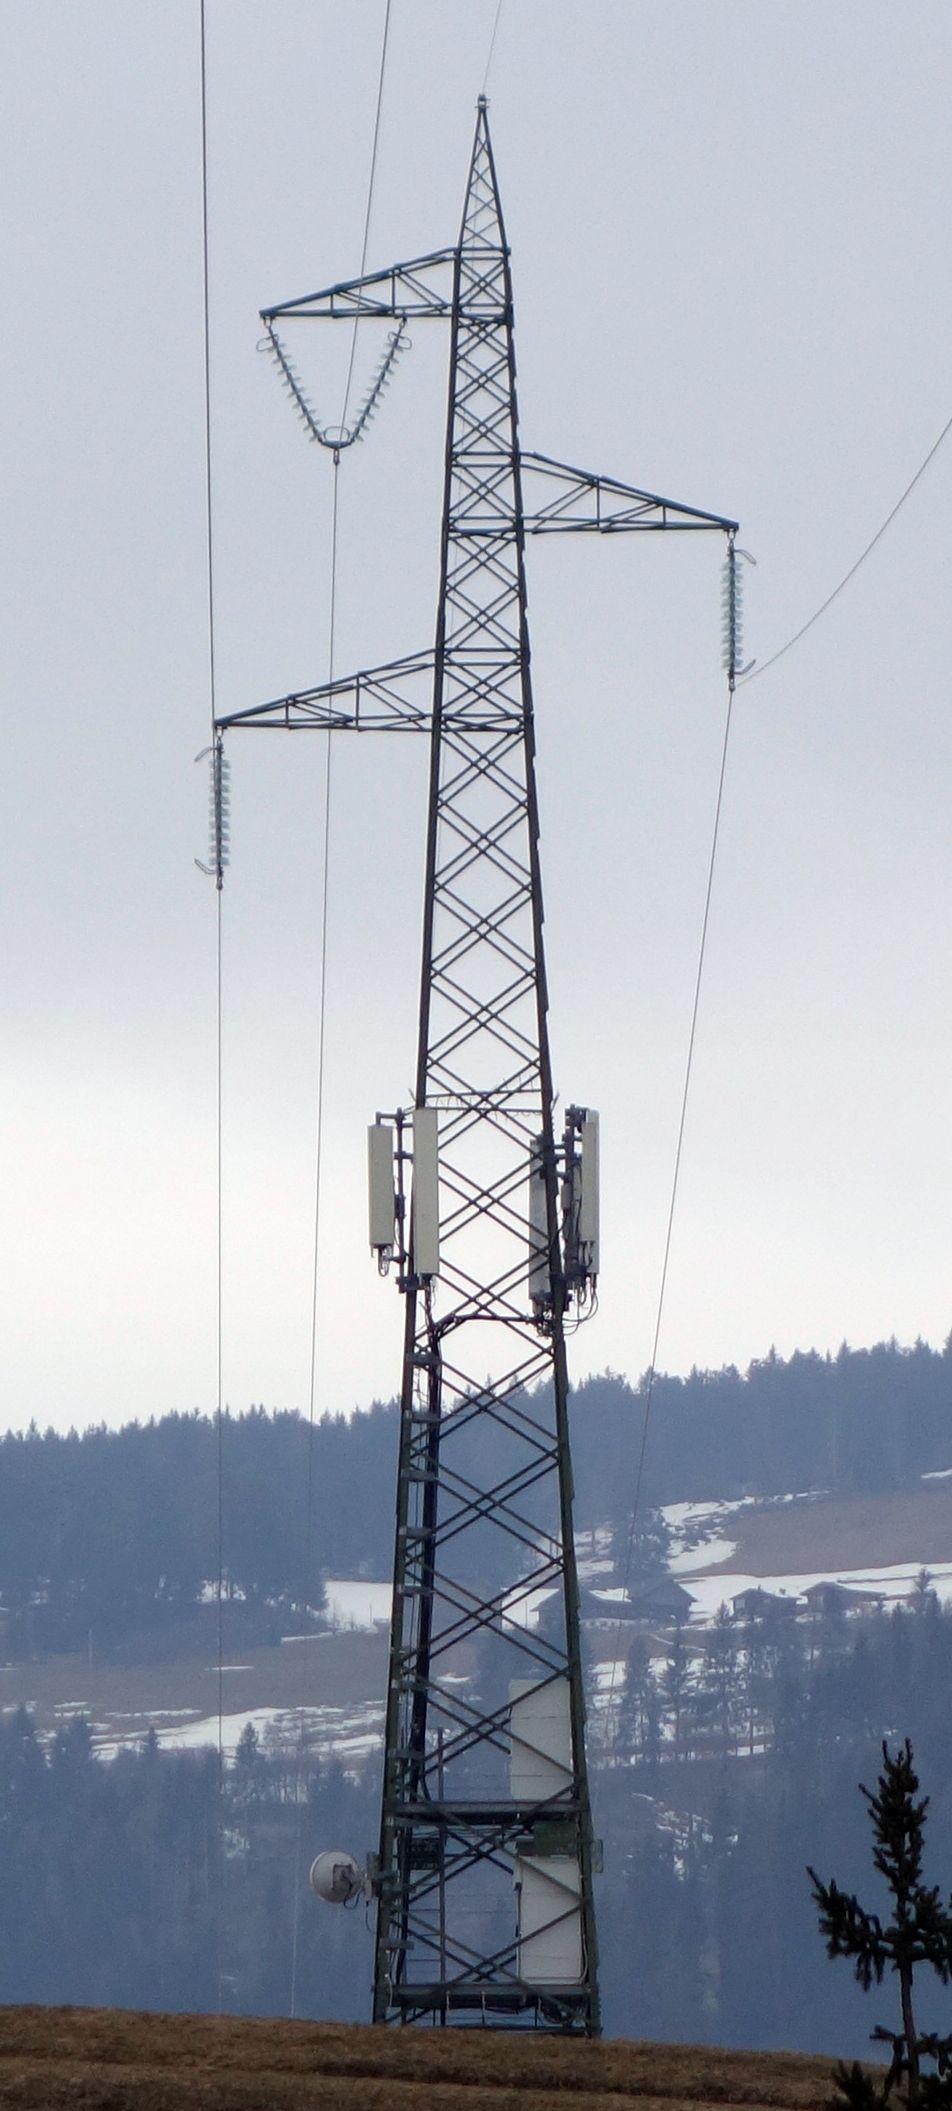 Die Anlage war im Februar 2020 noch in Betrieb und die Übersiedlung von Wind3 auf den Vodafone-Masten noch nicht abgeschlossen